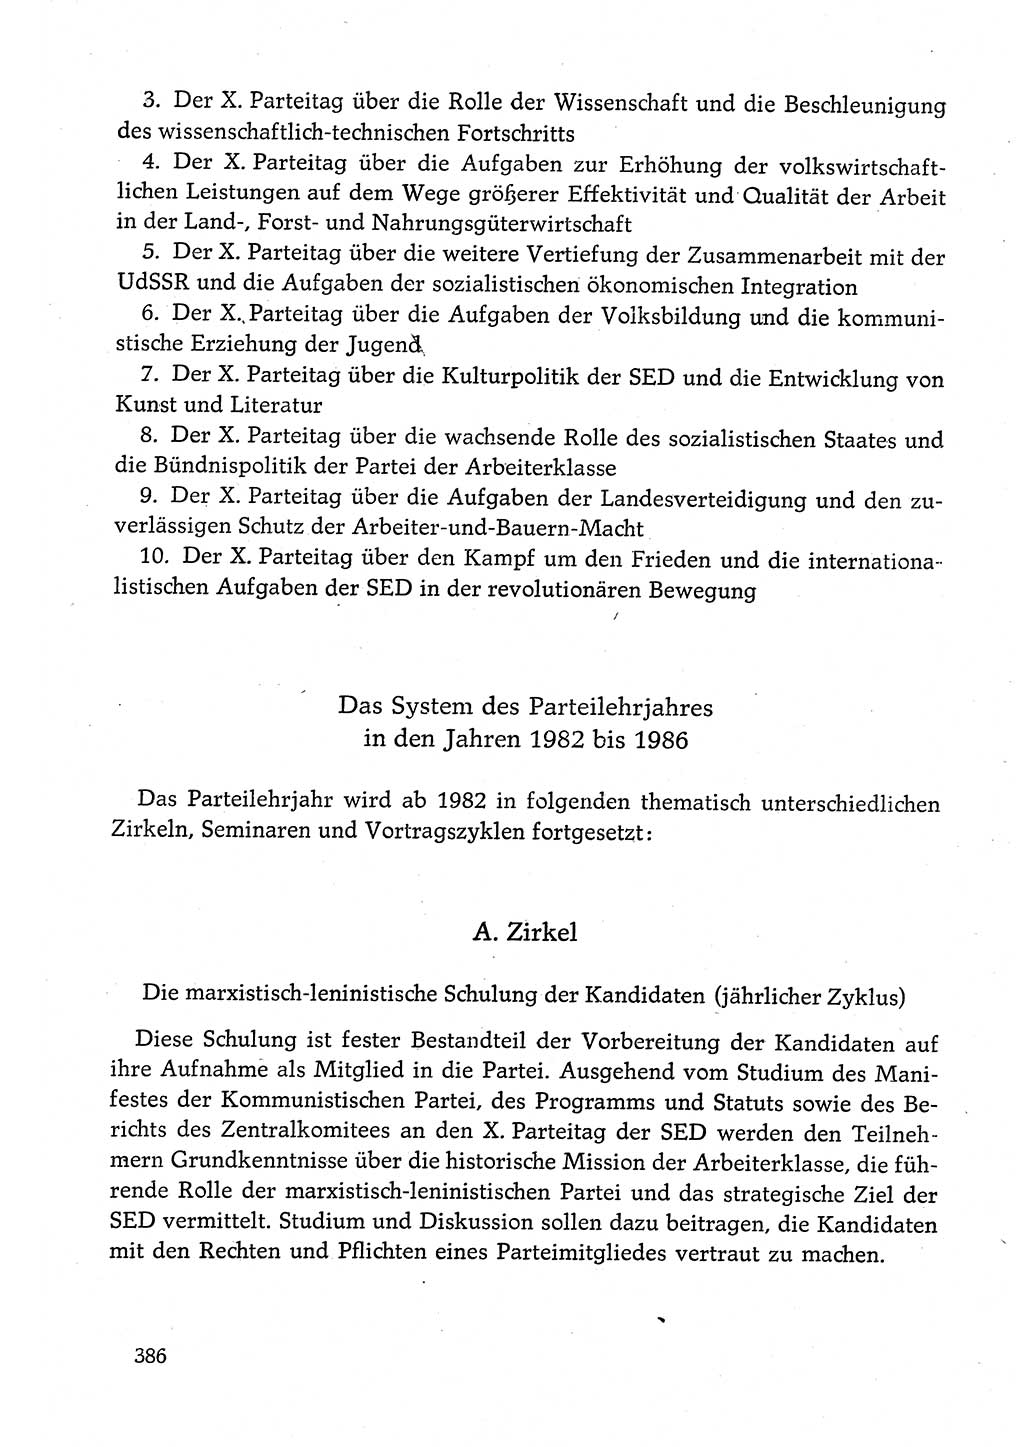 Dokumente der Sozialistischen Einheitspartei Deutschlands (SED) [Deutsche Demokratische Republik (DDR)] 1980-1981, Seite 386 (Dok. SED DDR 1980-1981, S. 386)